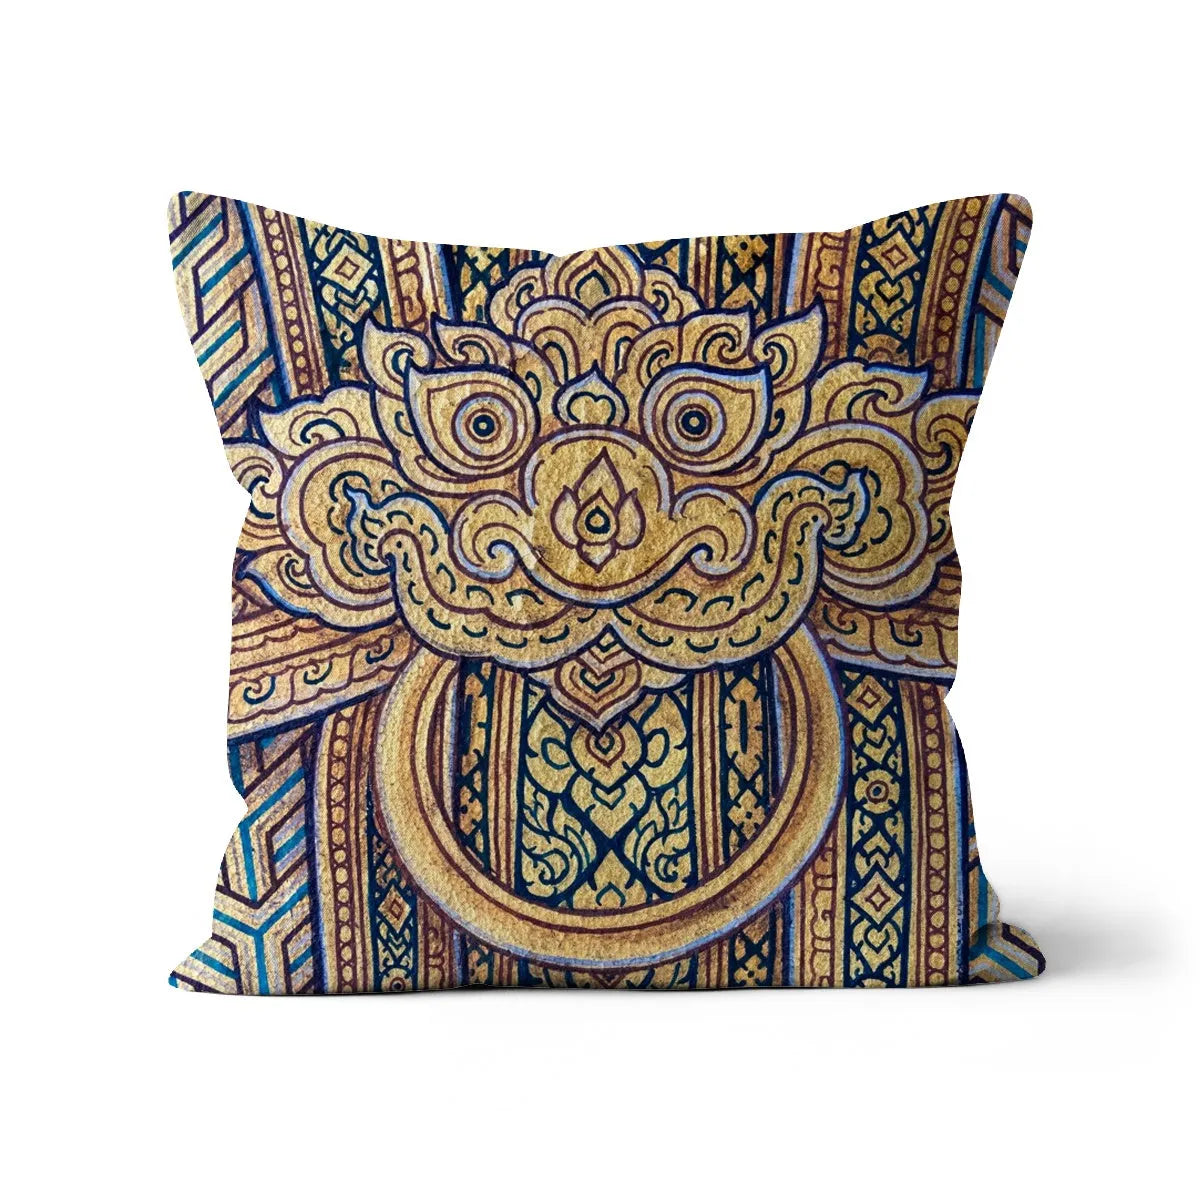 Man’s Best Friend Cushion - Decorative Throw Pillow - Linen / 18’x18’ - Throw Pillows - Aesthetic Art